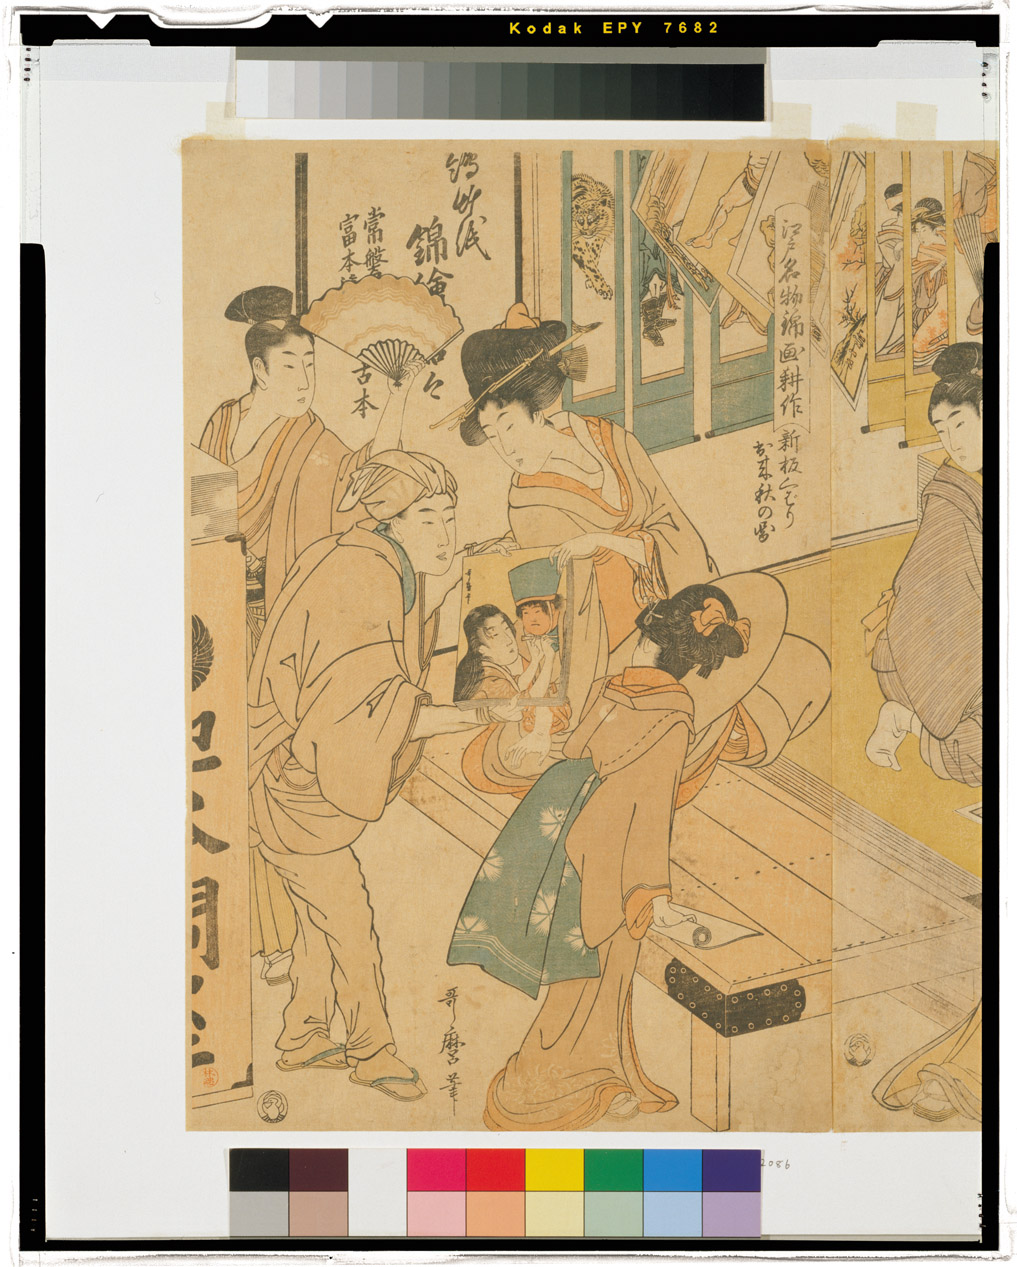 Kitagawa Utamaro: Suri-ko, mise-saki, shinpan-kubari 摺工•店先•新 